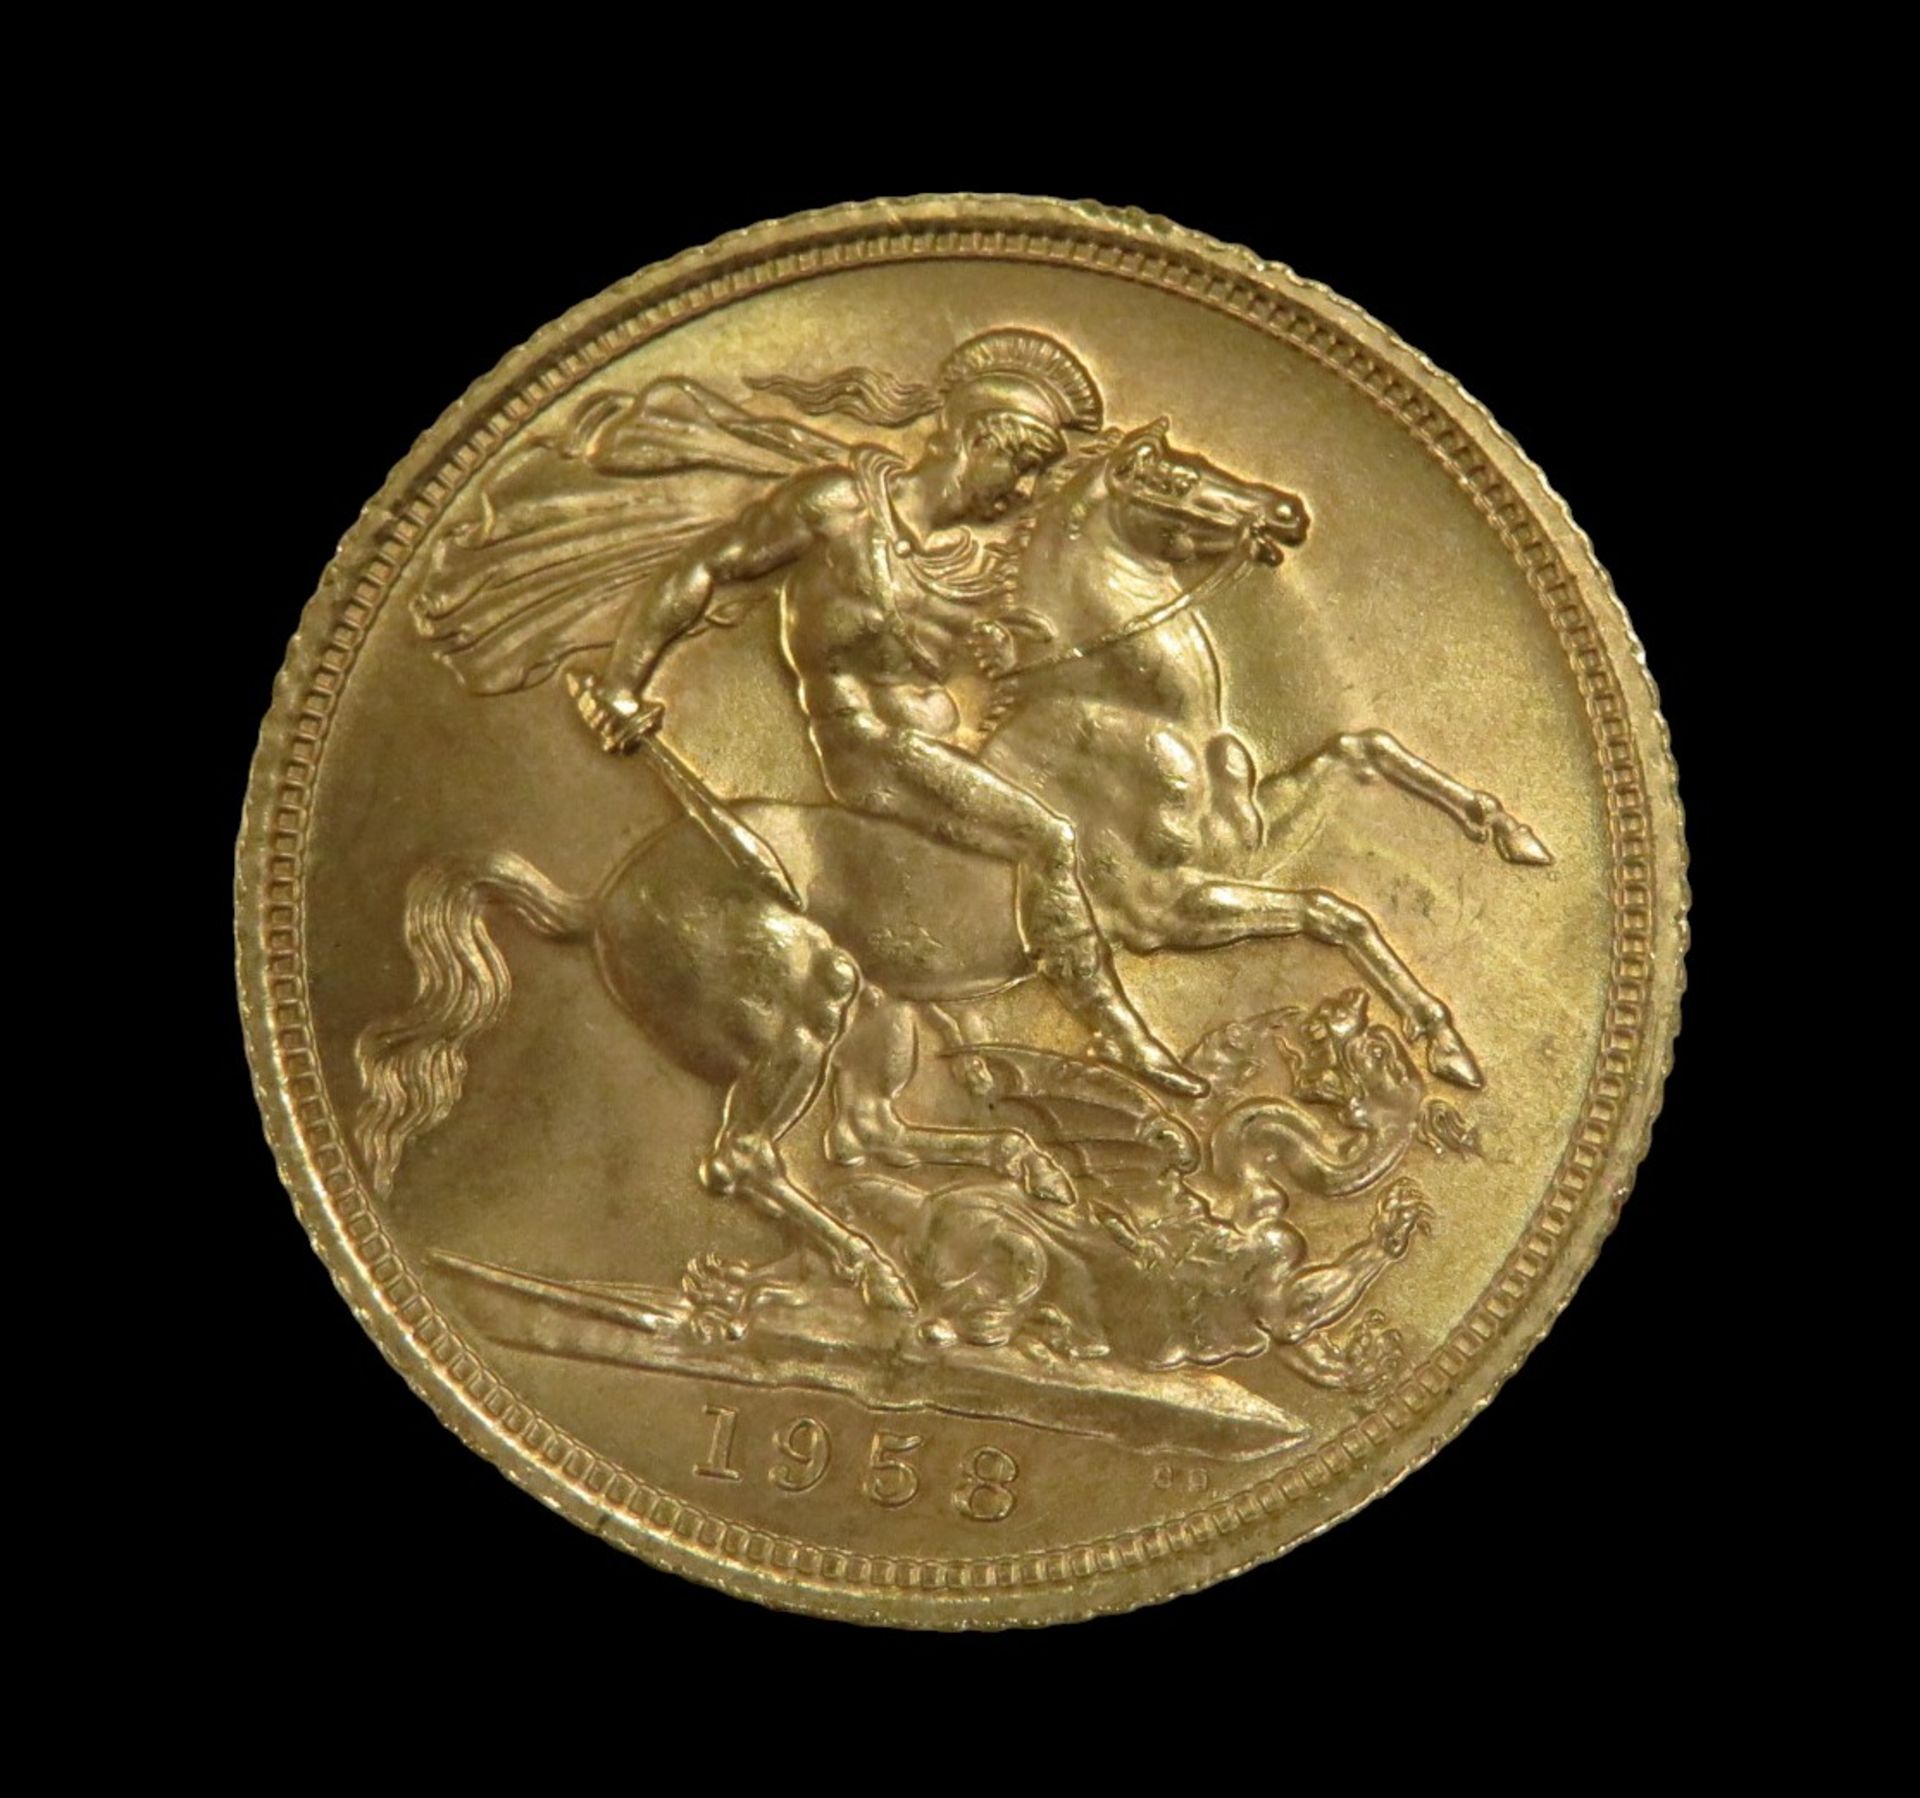 Goldmünze, 1 Pfund, Sovereign, Elizabeth II, 1958, Gold 916/000, 7,99 g, d 2,2 cm. - Bild 2 aus 2